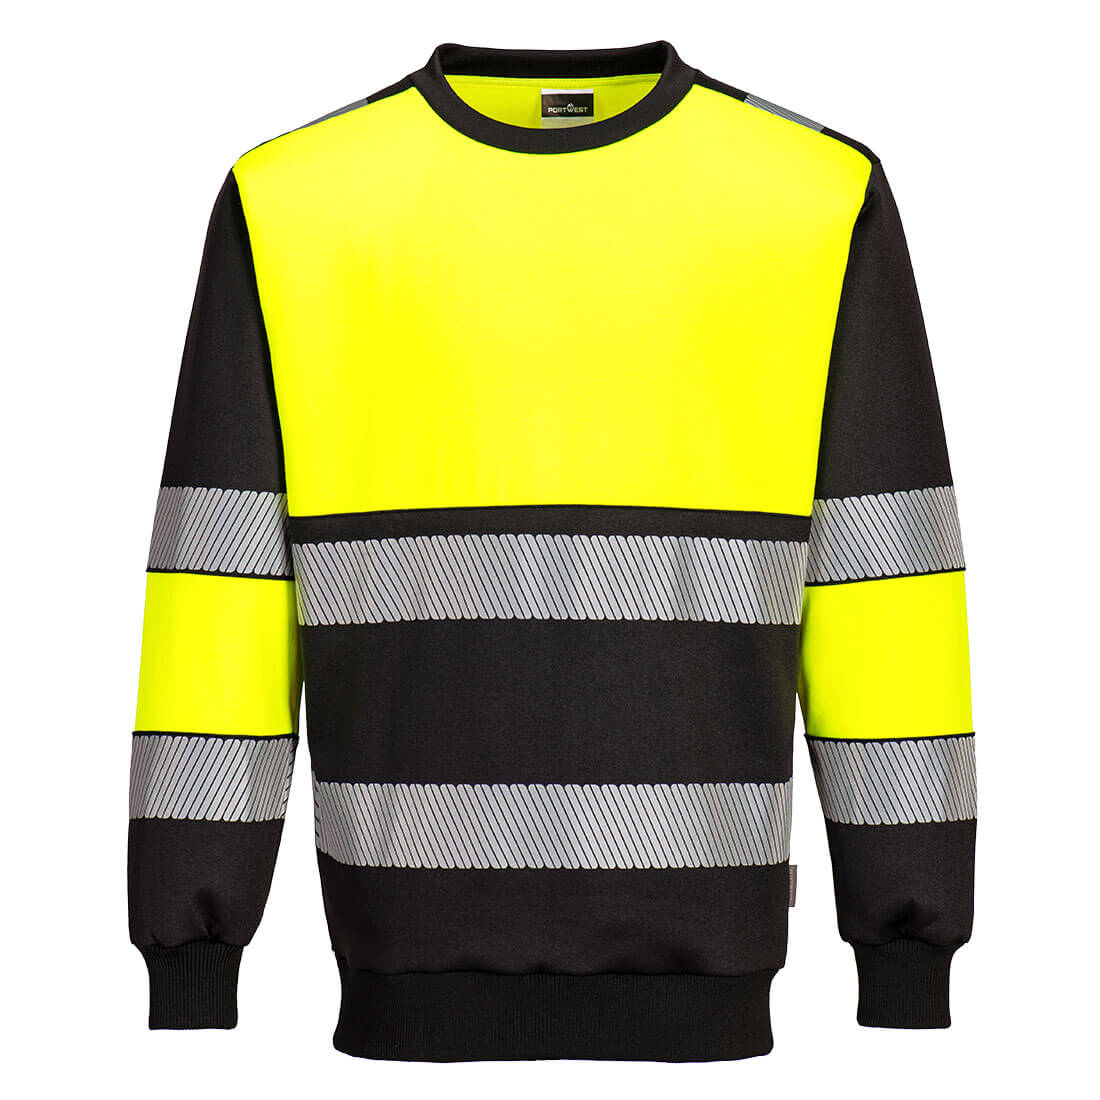 PW3 Hi-Vis Class 1 Sweatshirt PW376 Yellow/Black Size 4XL Fit R